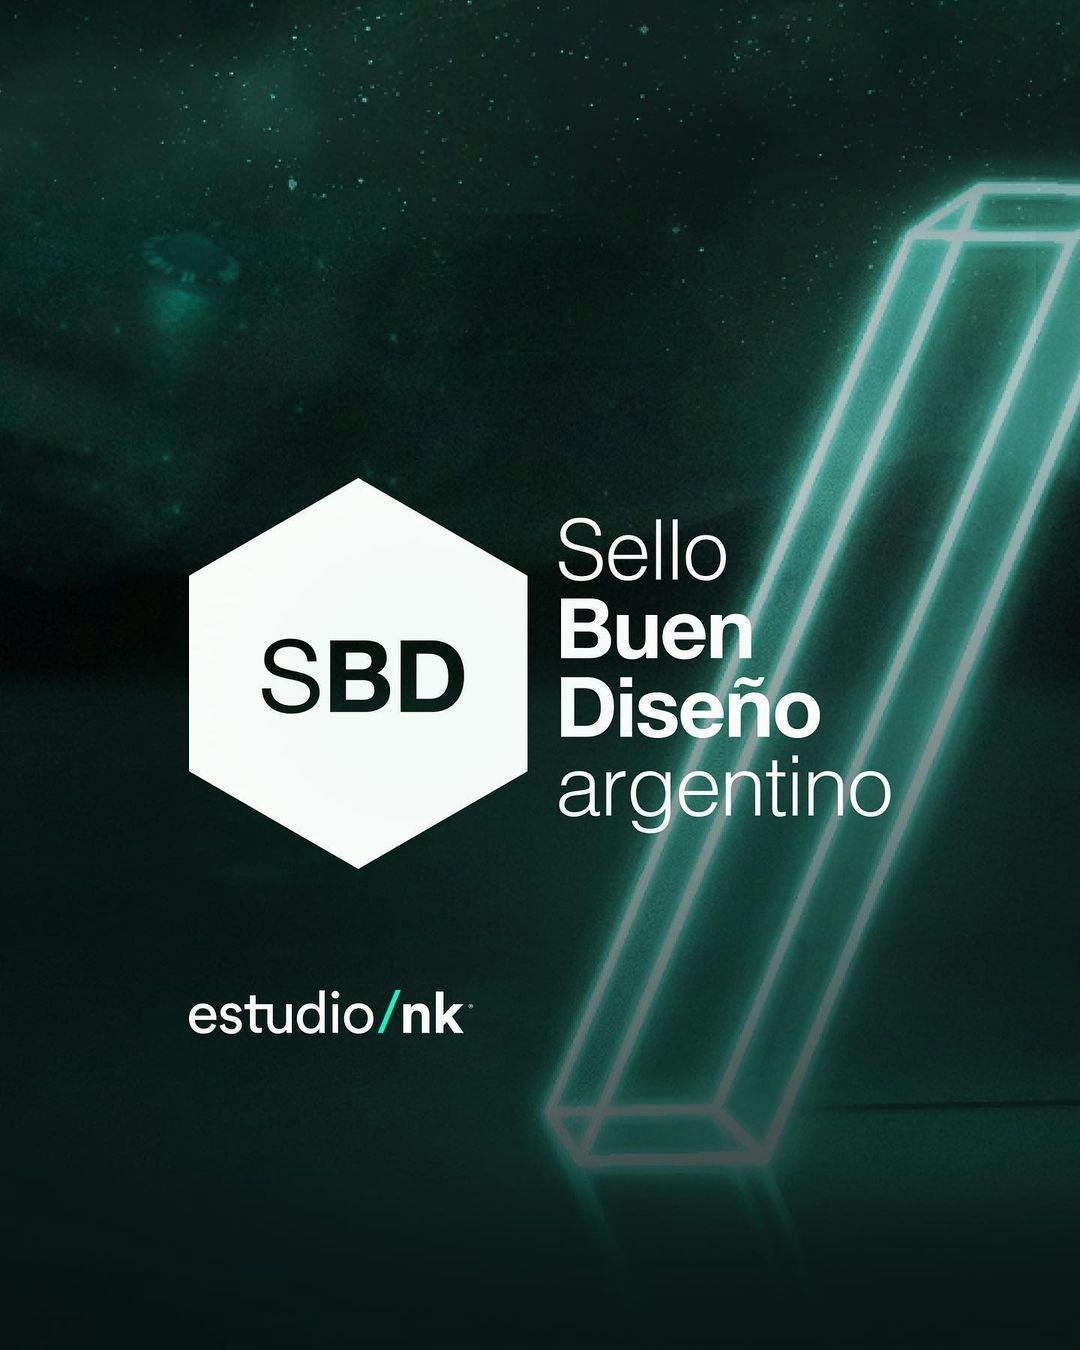 SBD Sello Buen Diseño Argentino